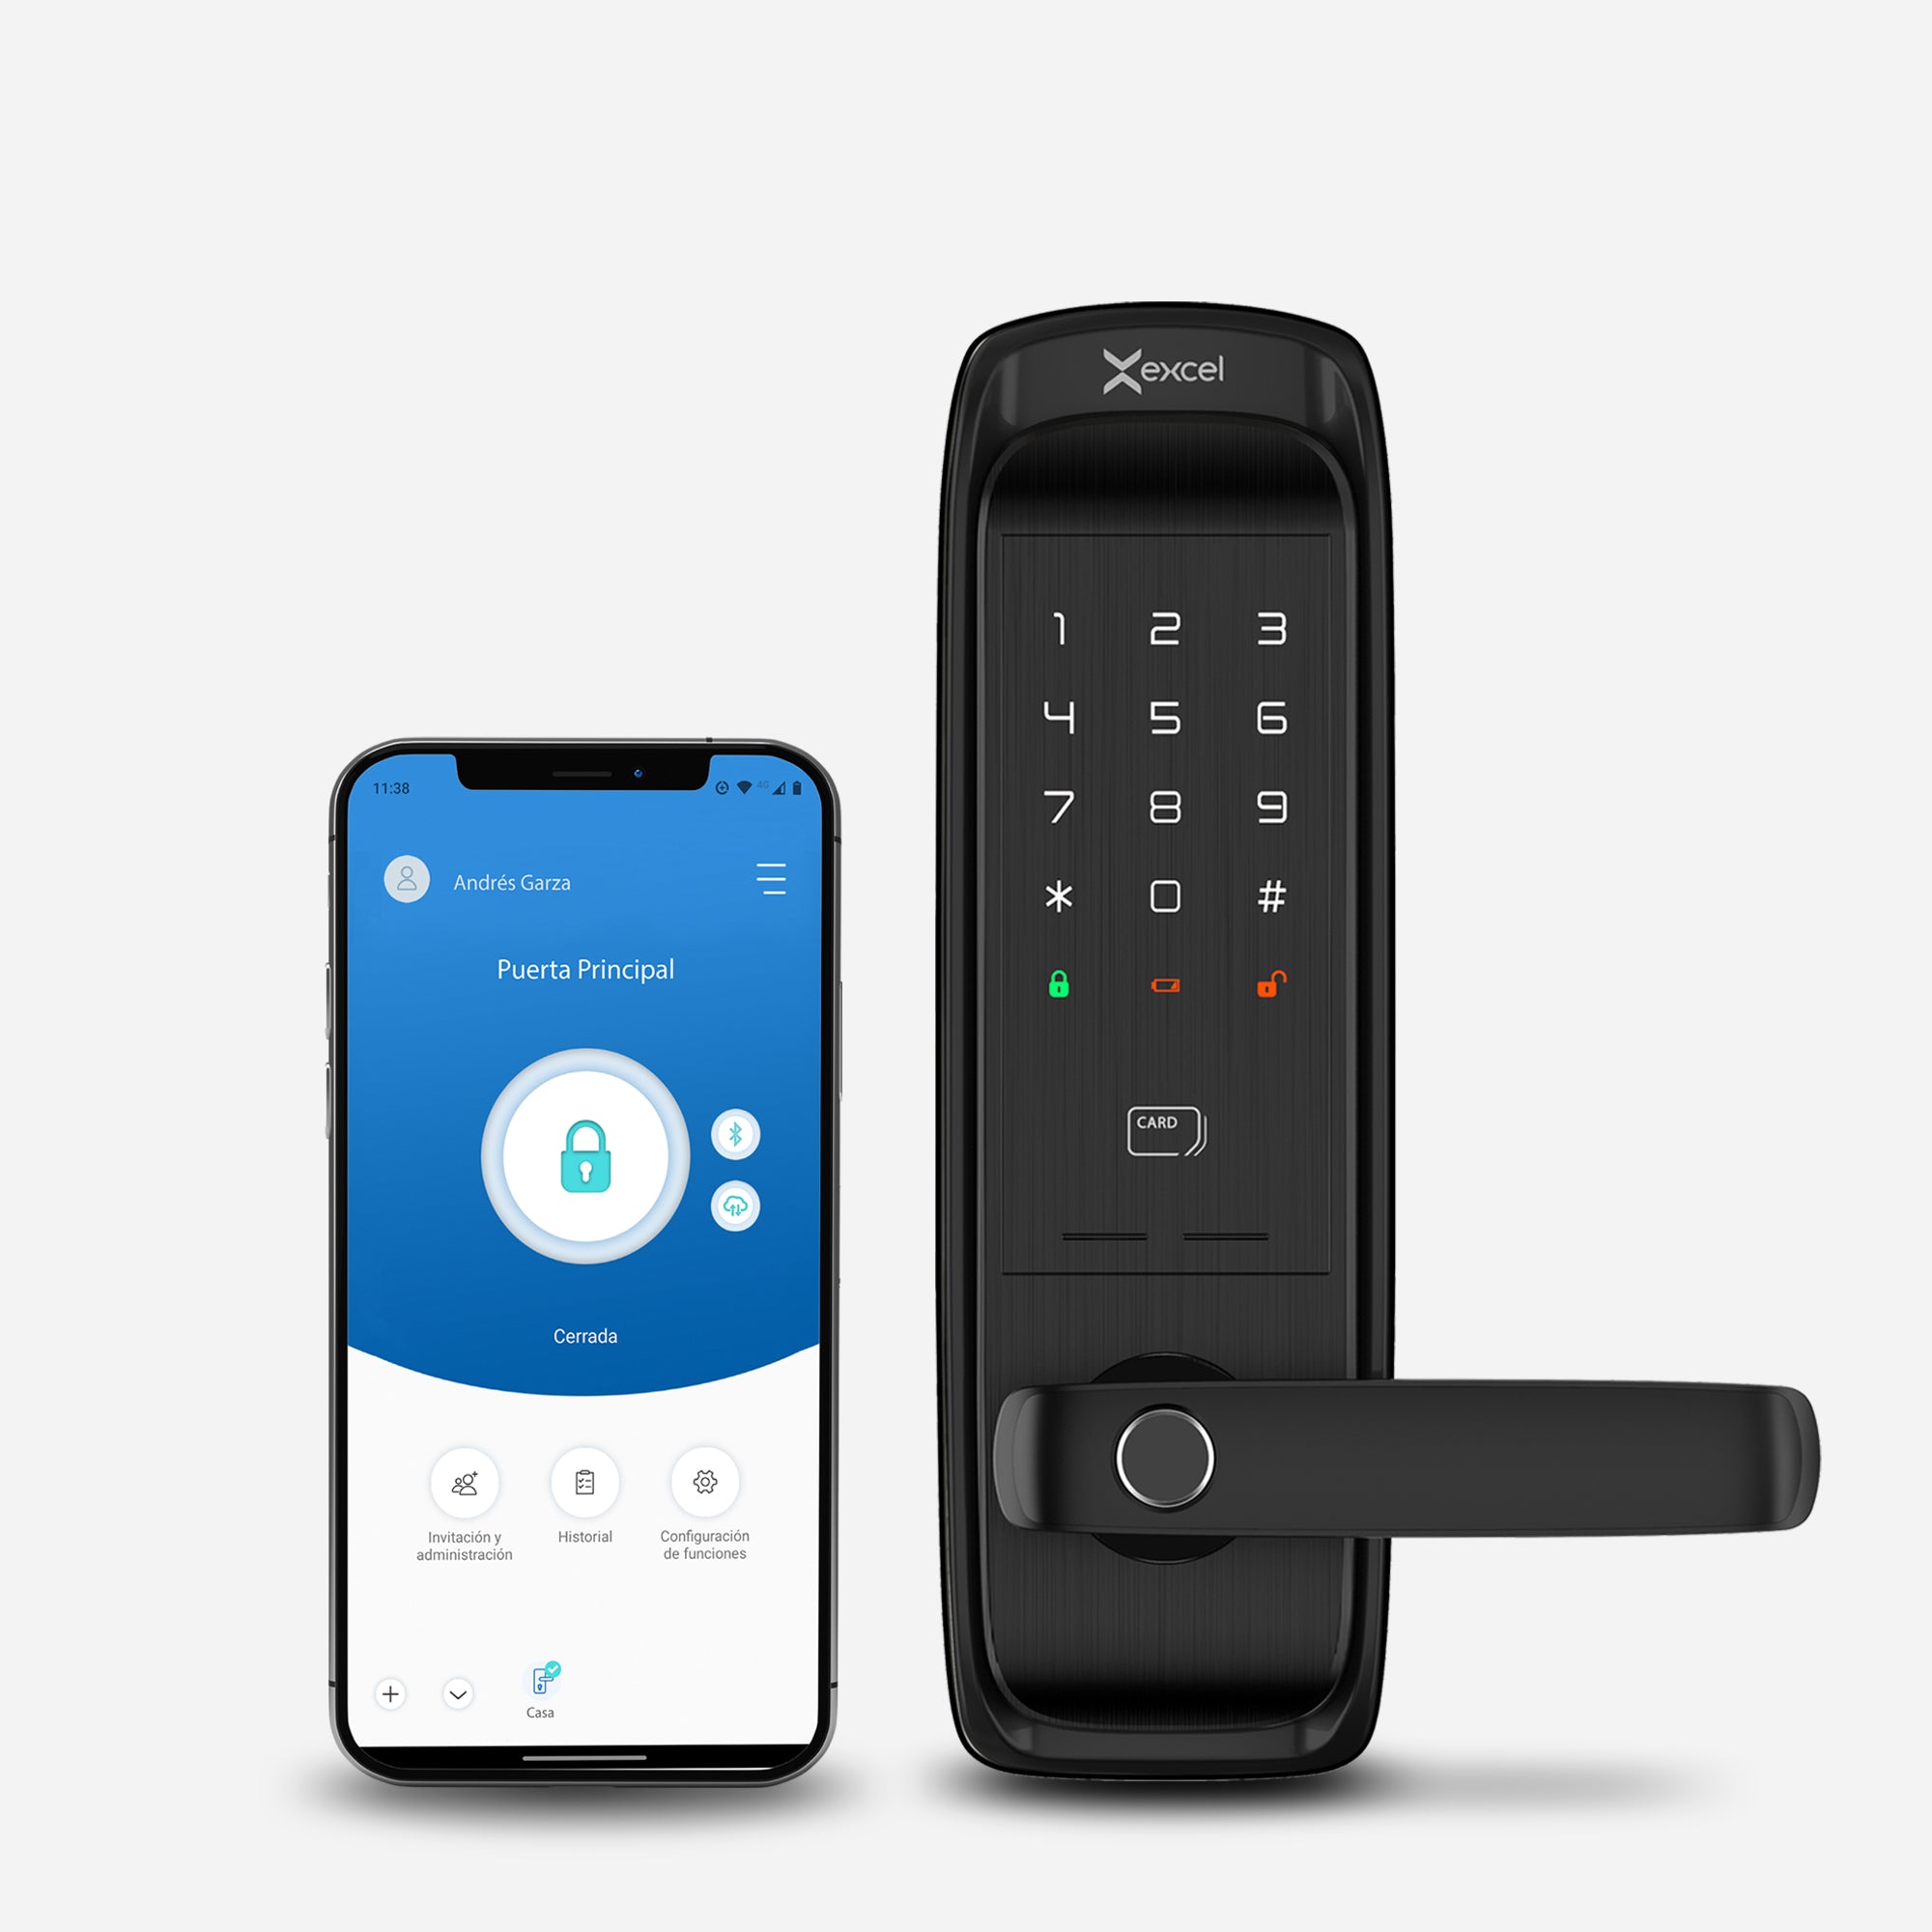 Cerradura Inteligente EXC-SL500. Conectividad WiFi y Bluetooth, lector de huella digital, Contraseña Numérica y Tarjeta RFID. Celular con la app Excel Smart Doorlock